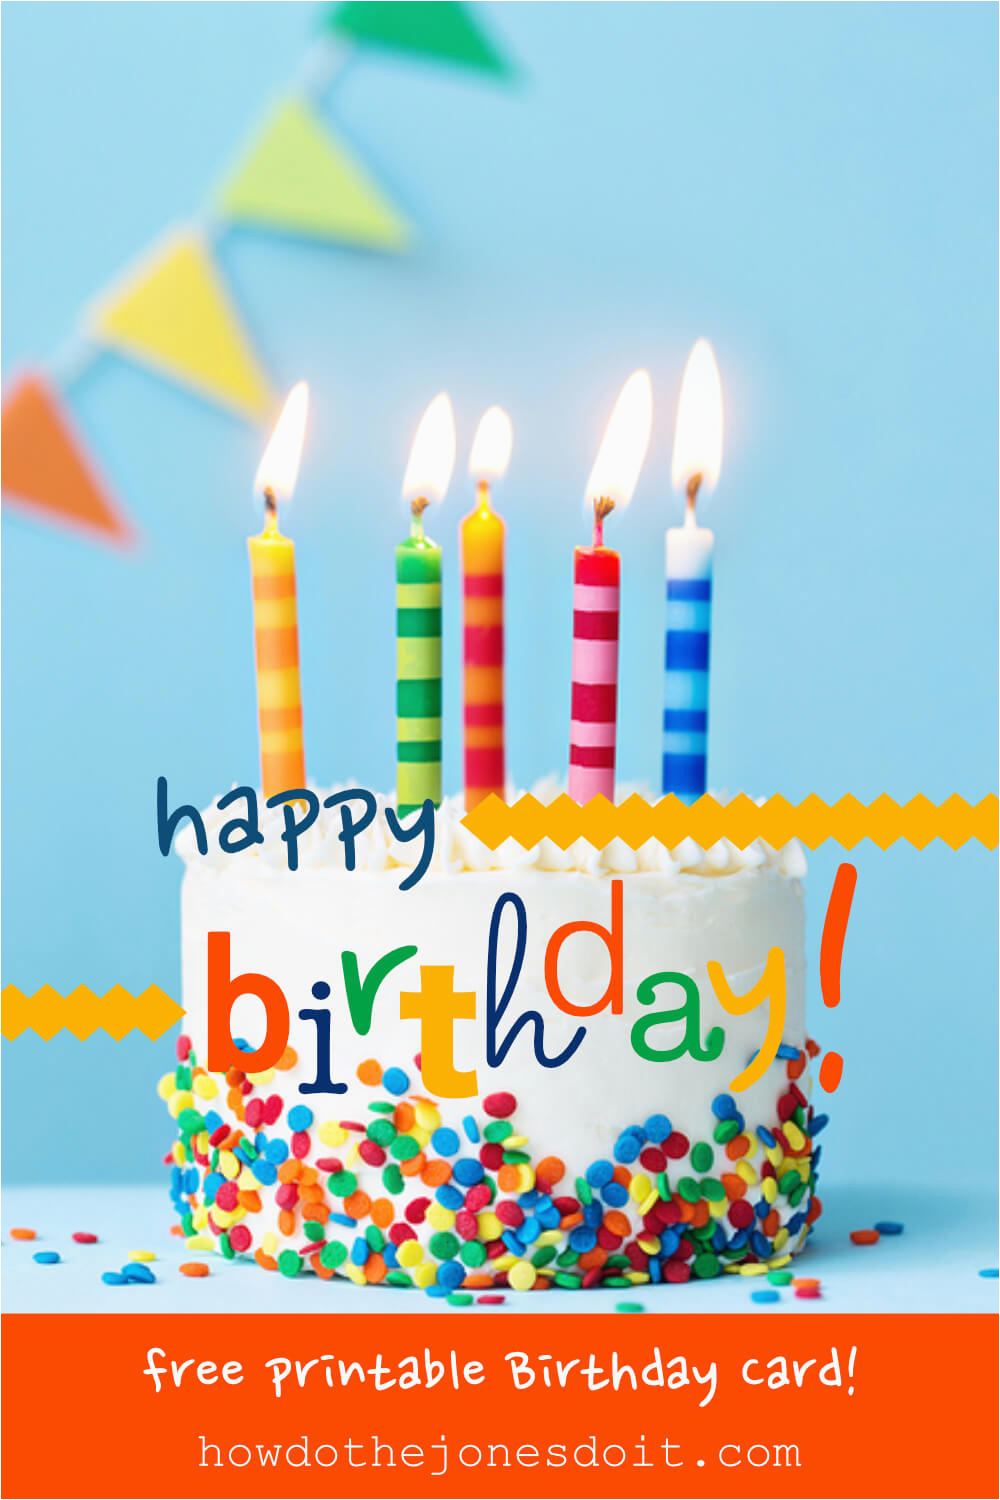 Make A Birthday Card To Print Free BirthdayBuzz